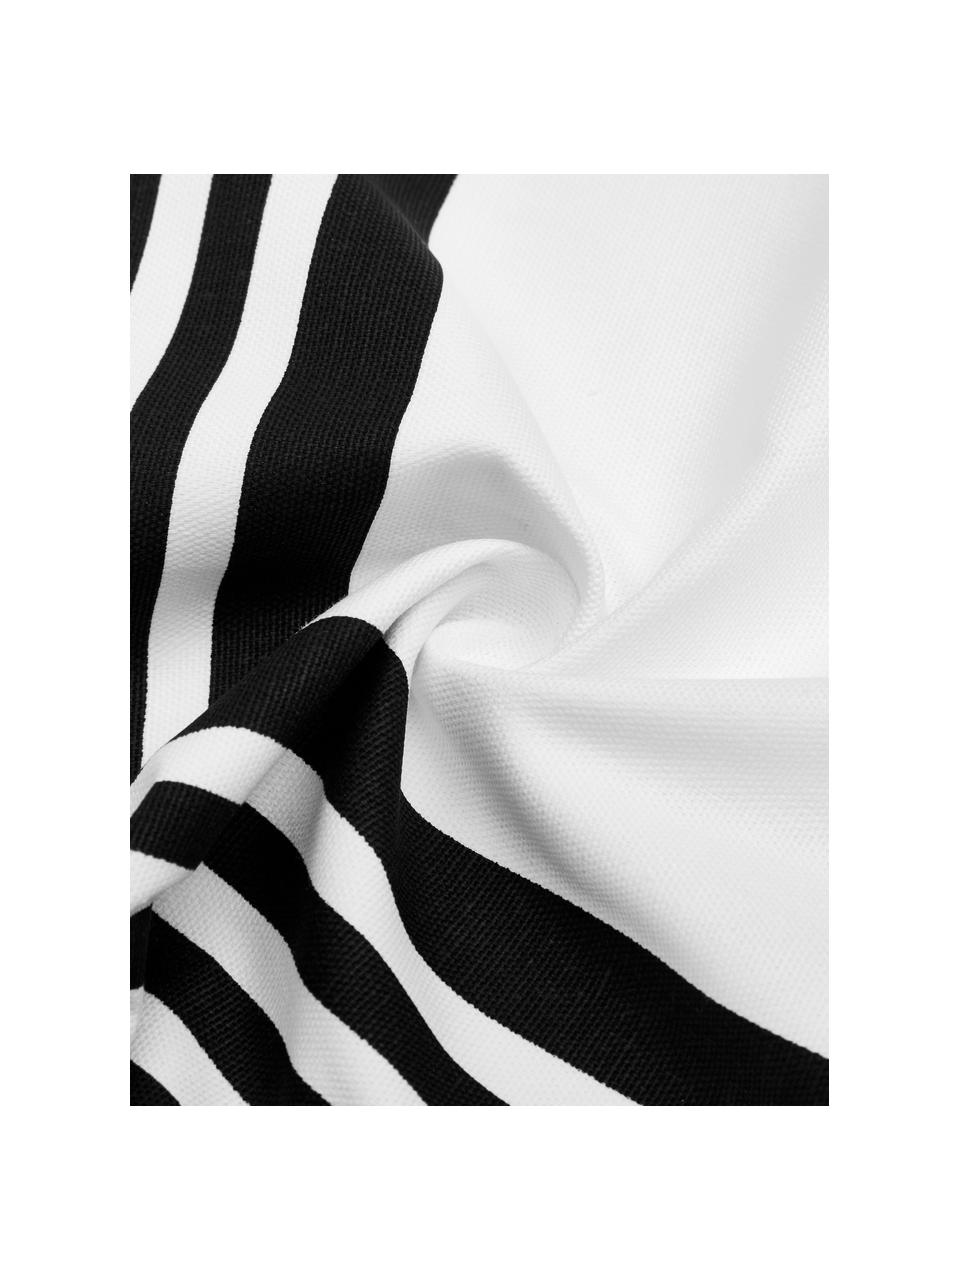 Kussenhoes Zahra in zwart/wit met grafisch patroon, 100% katoen, Wit, zwart, 45 x 45 cm